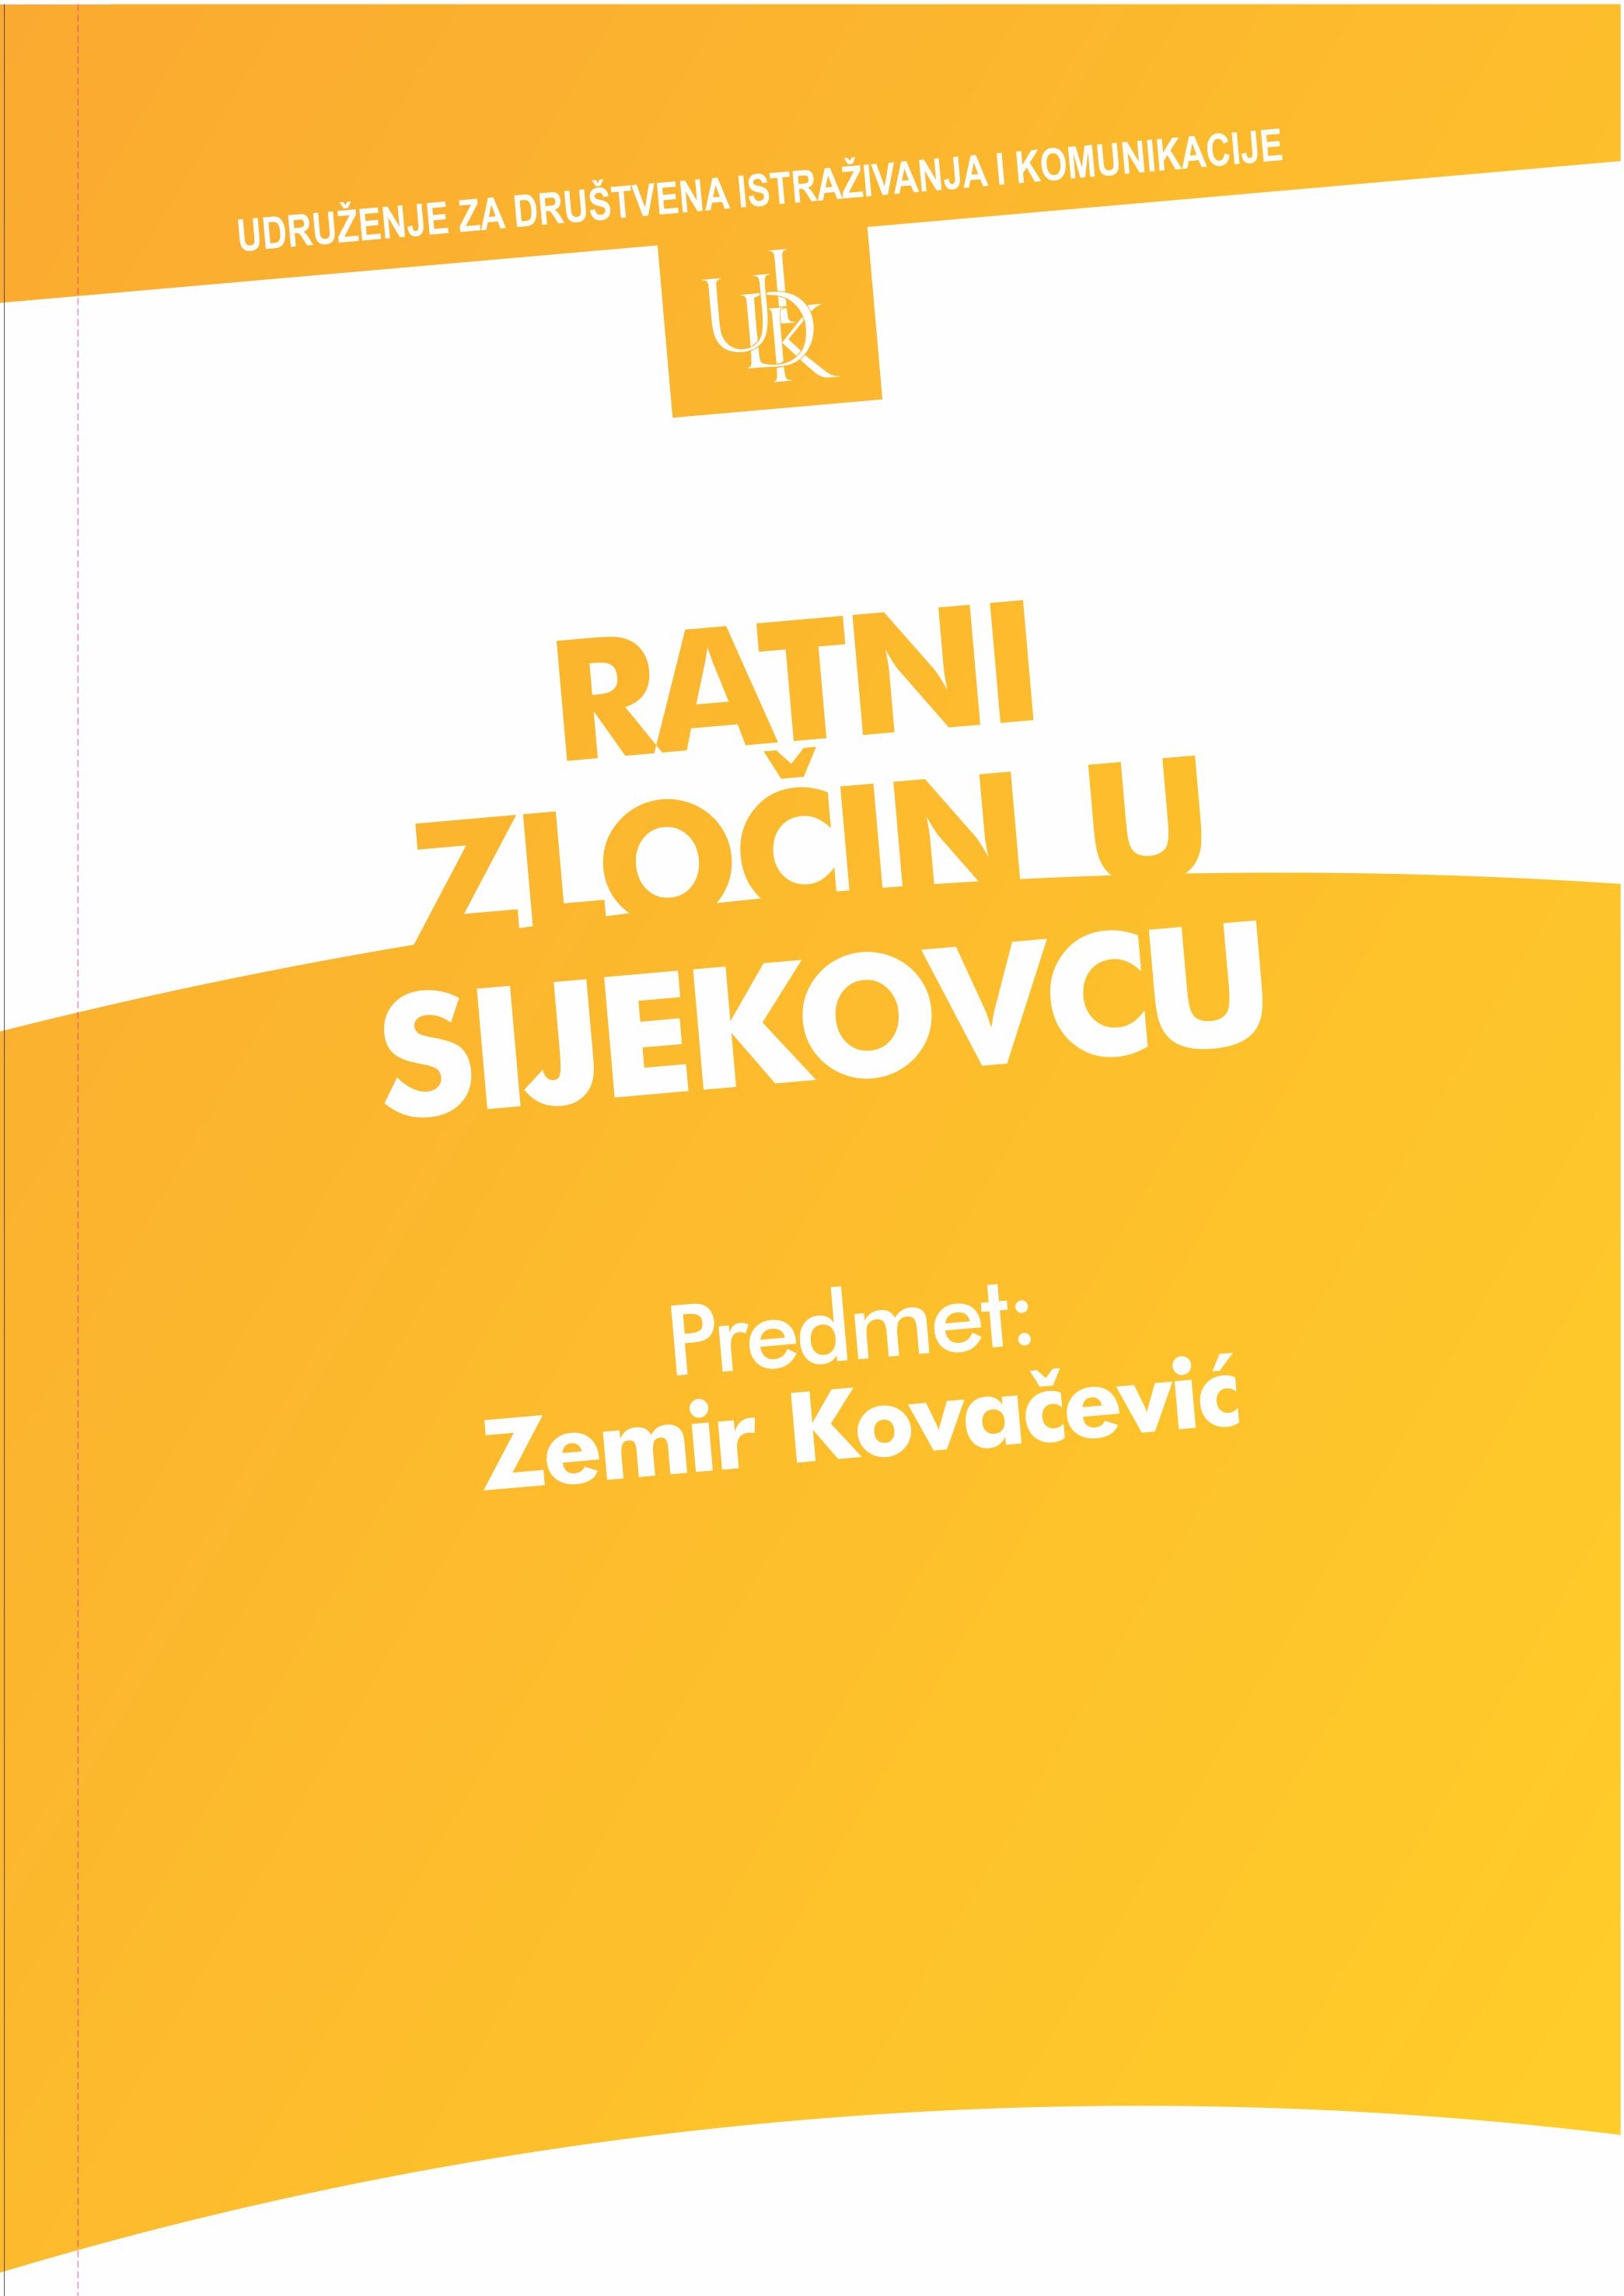 War crime in Sijekovac, Verdict: Zemir Kovačević Cover Image